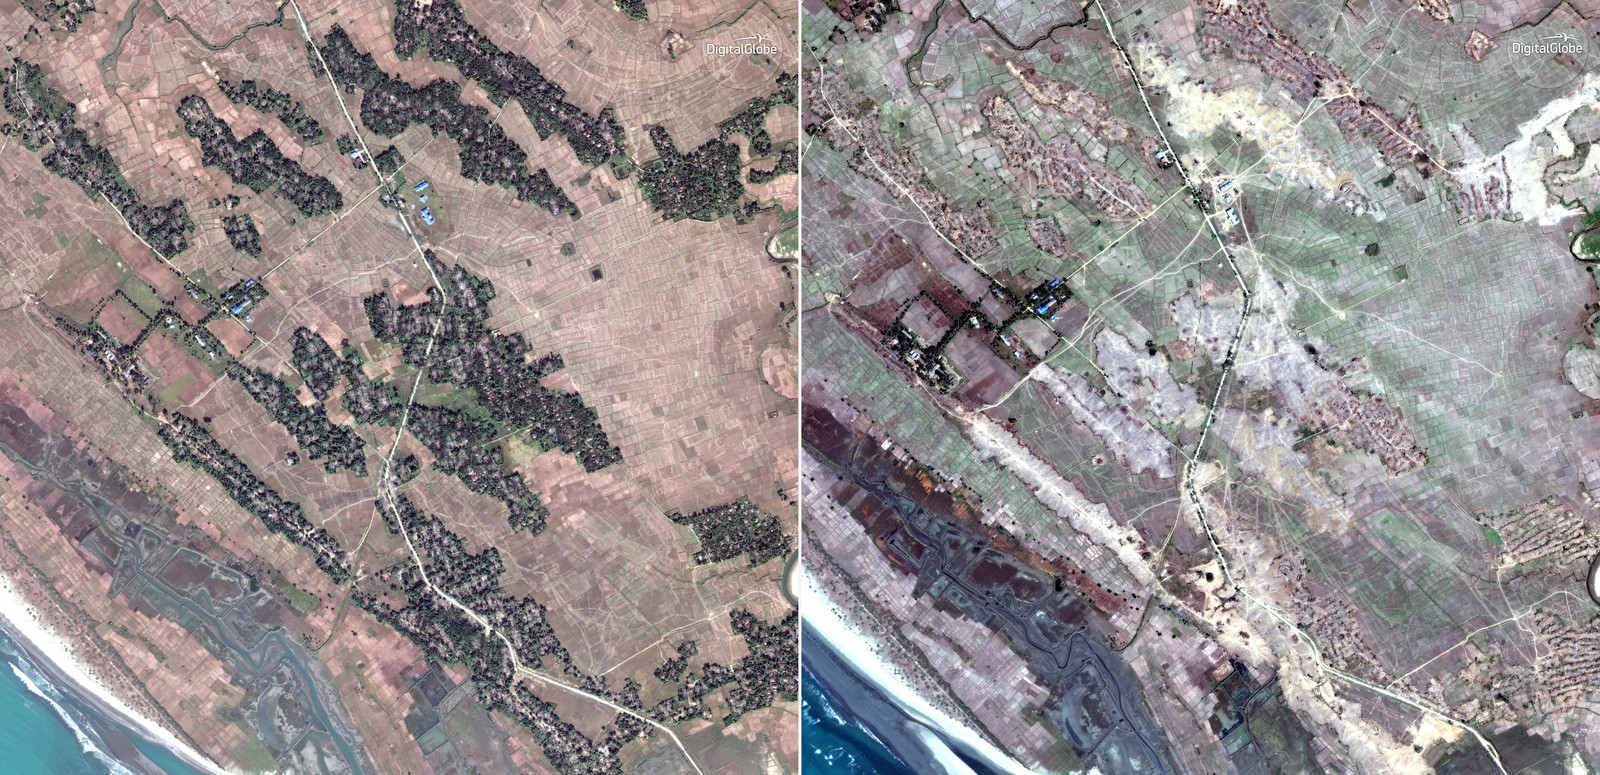 Satellietbeelden uit de deelstaat Rakhine uit november 2017 en februari 2018. Het dorp Kar Yar, waar vooral Rohingya woonden, bestaat niet meer.